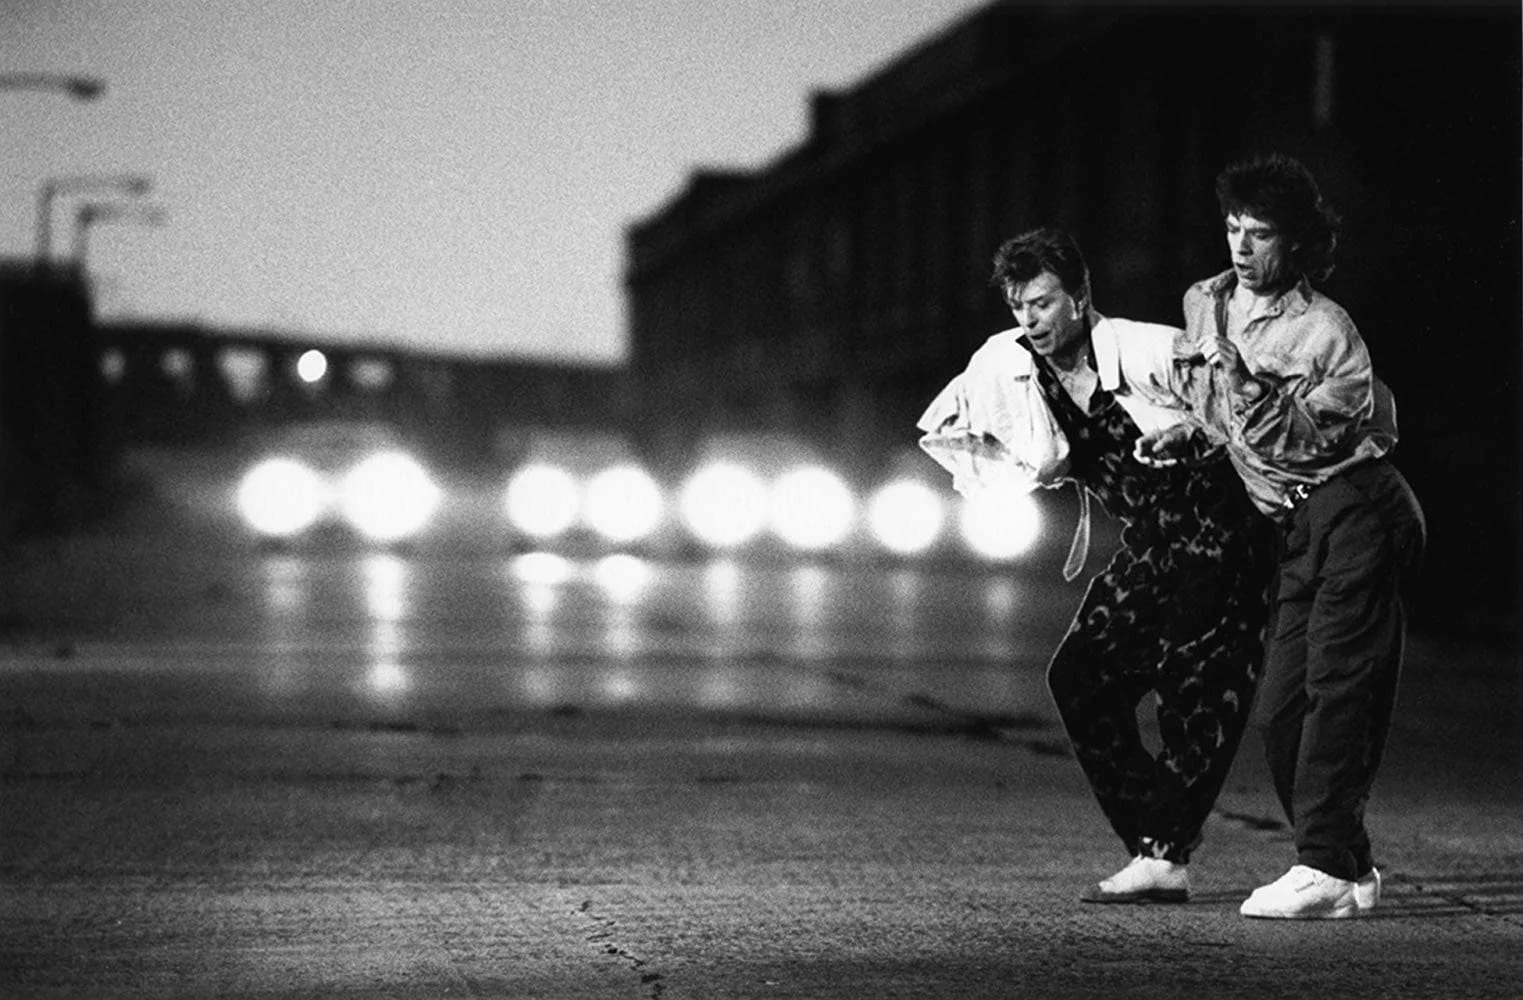 Pendant le tournage du clip vidéo Dancing in the Street (1985). David Bowie et Mick Jagger